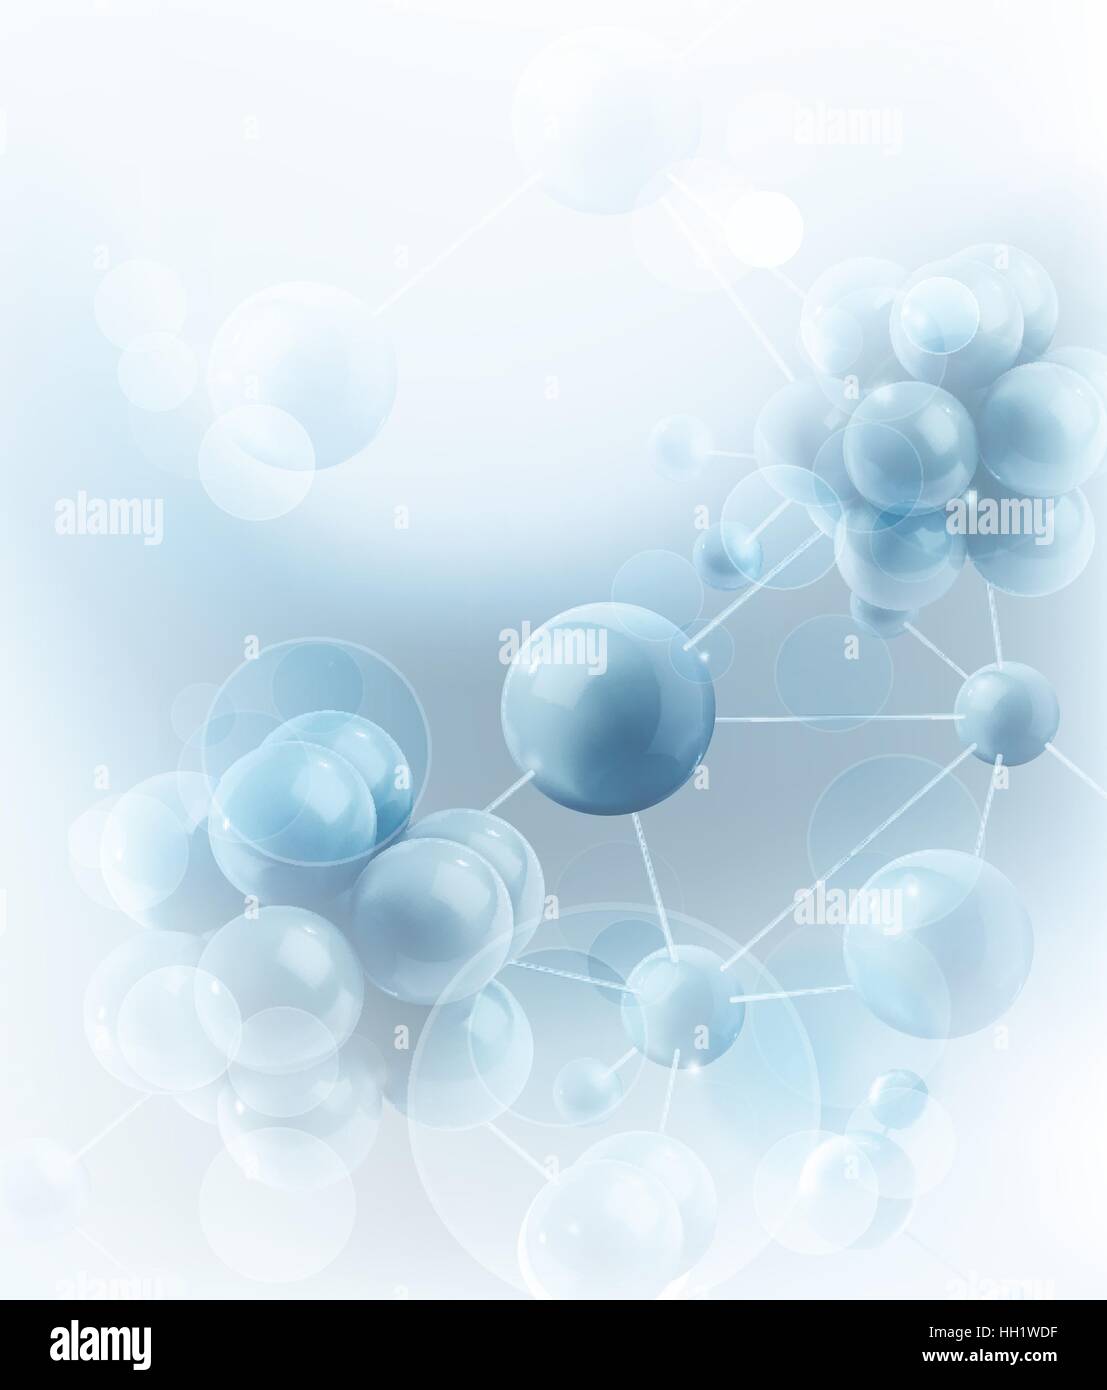 Les molécules et atomes. Vector background scientifique Illustration de Vecteur